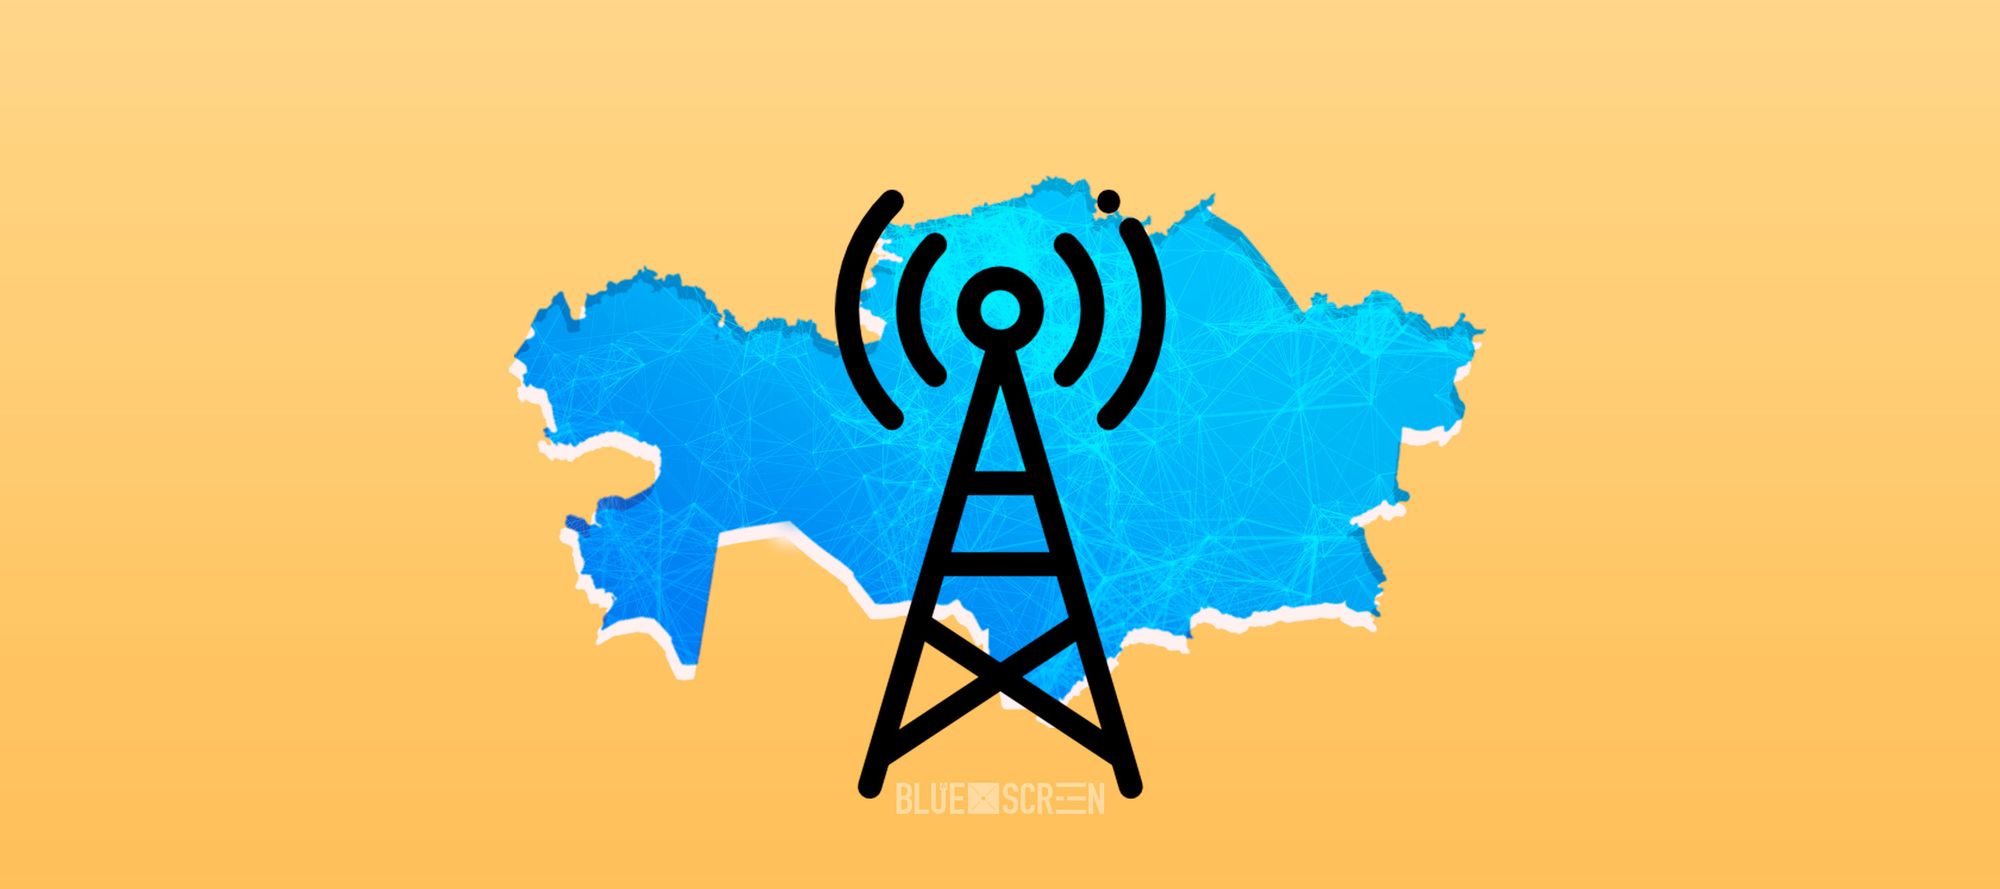 Токаев: Уровень охвата интернетом территории Казахстана достаточно высокий